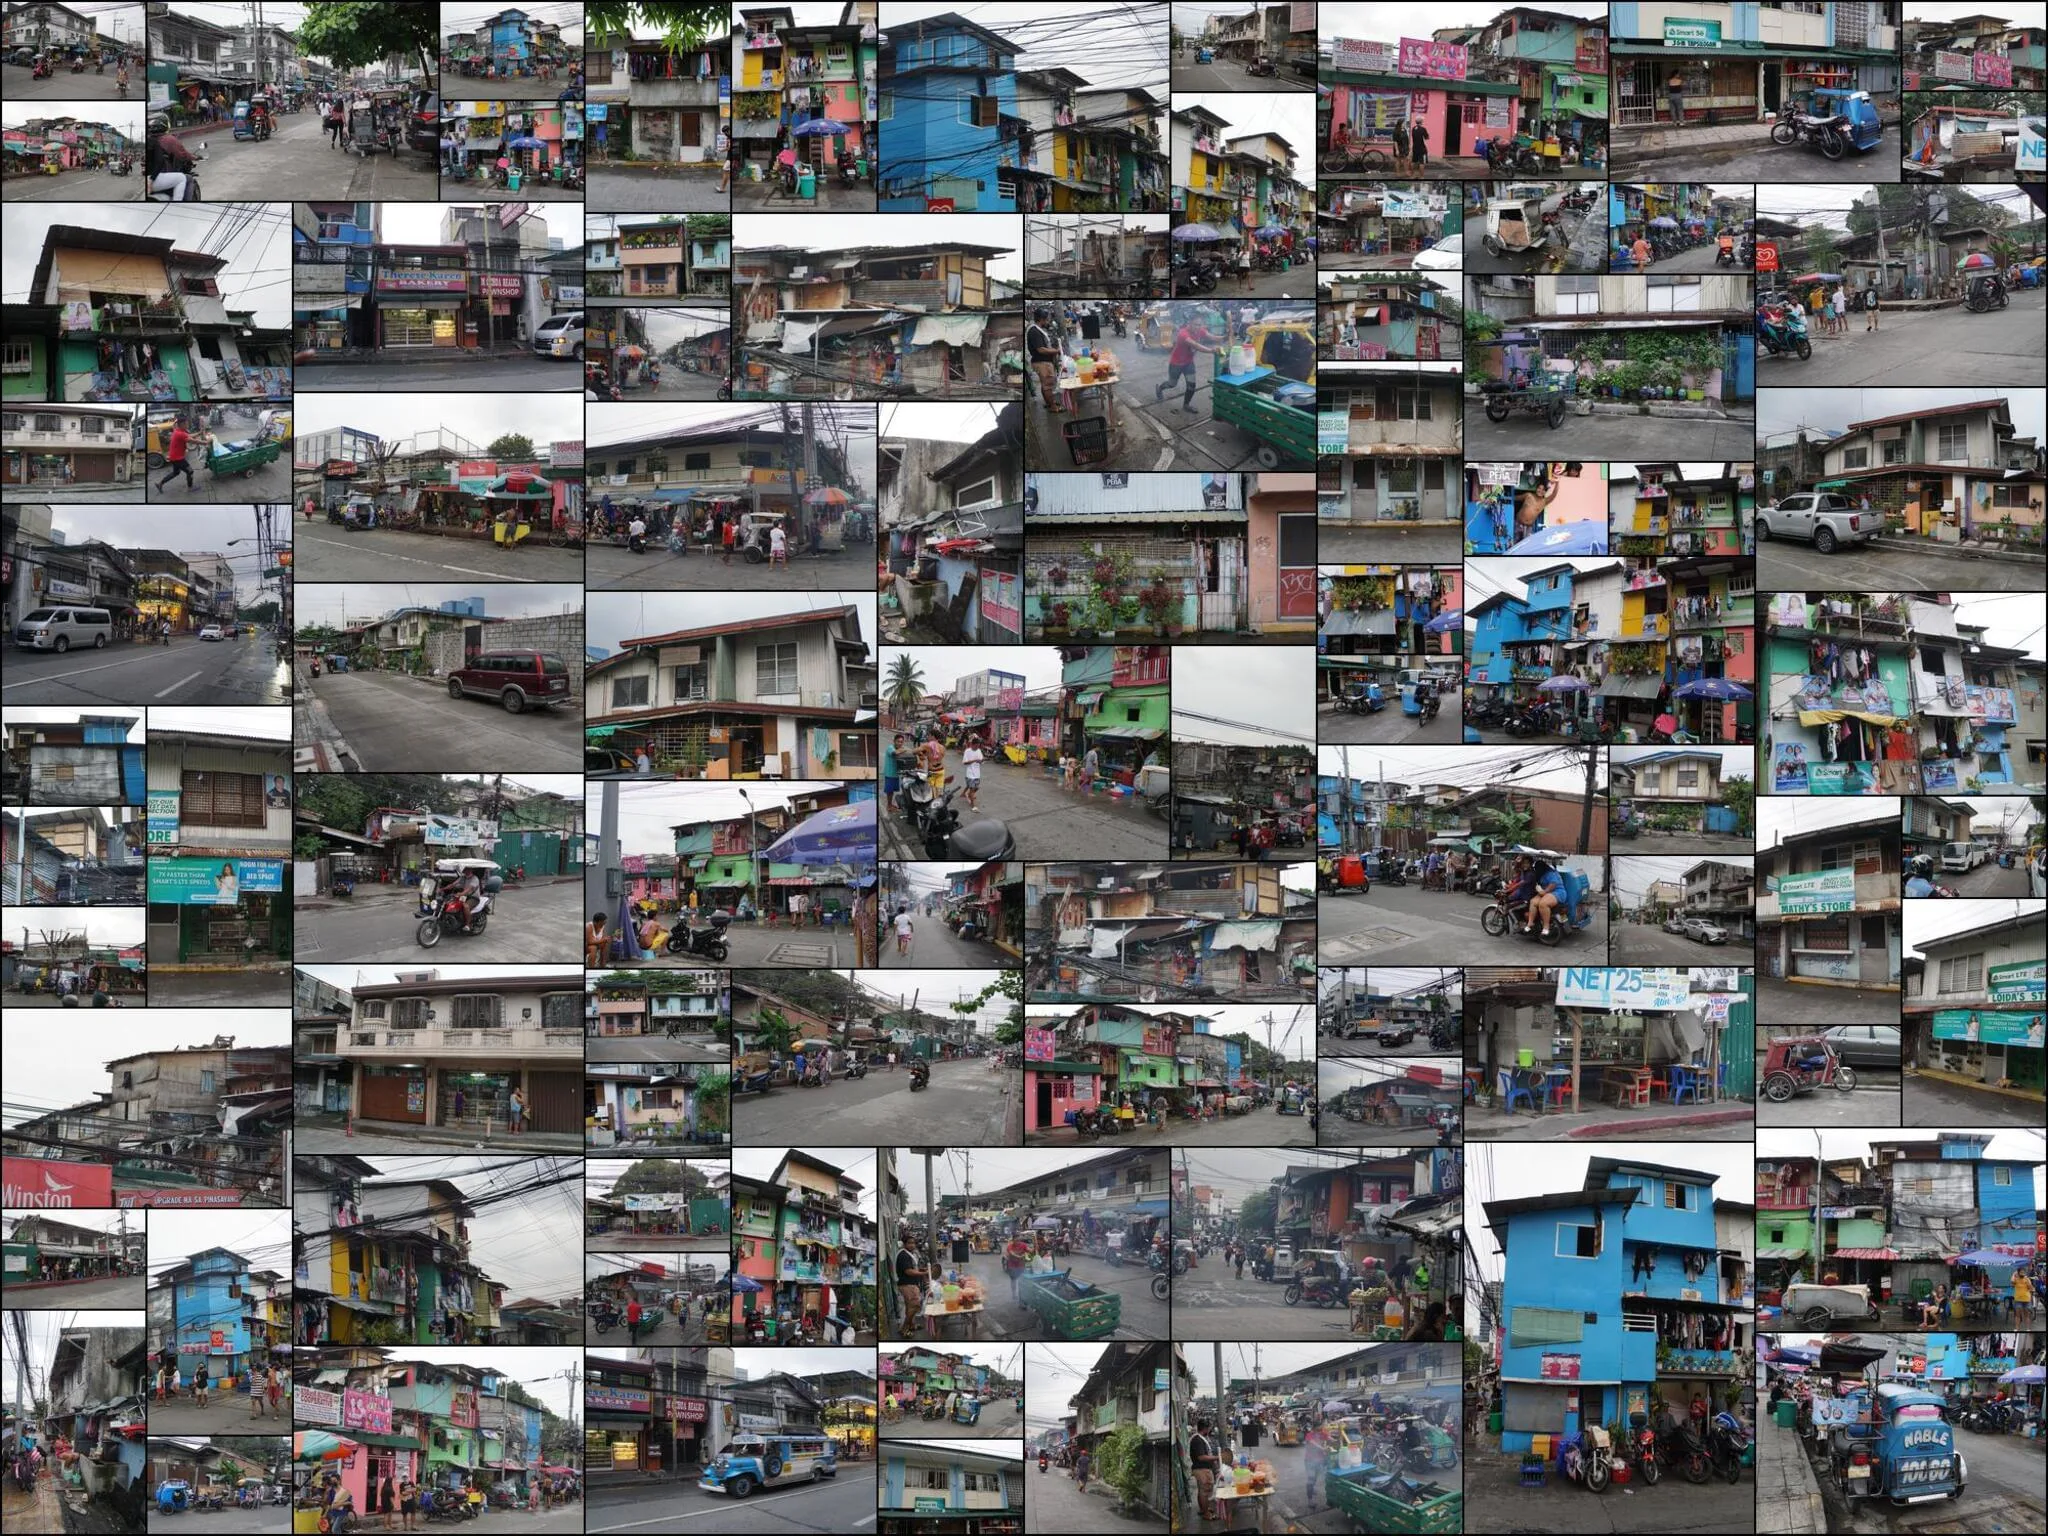 89 photos of Manila Slums Squatters Corner